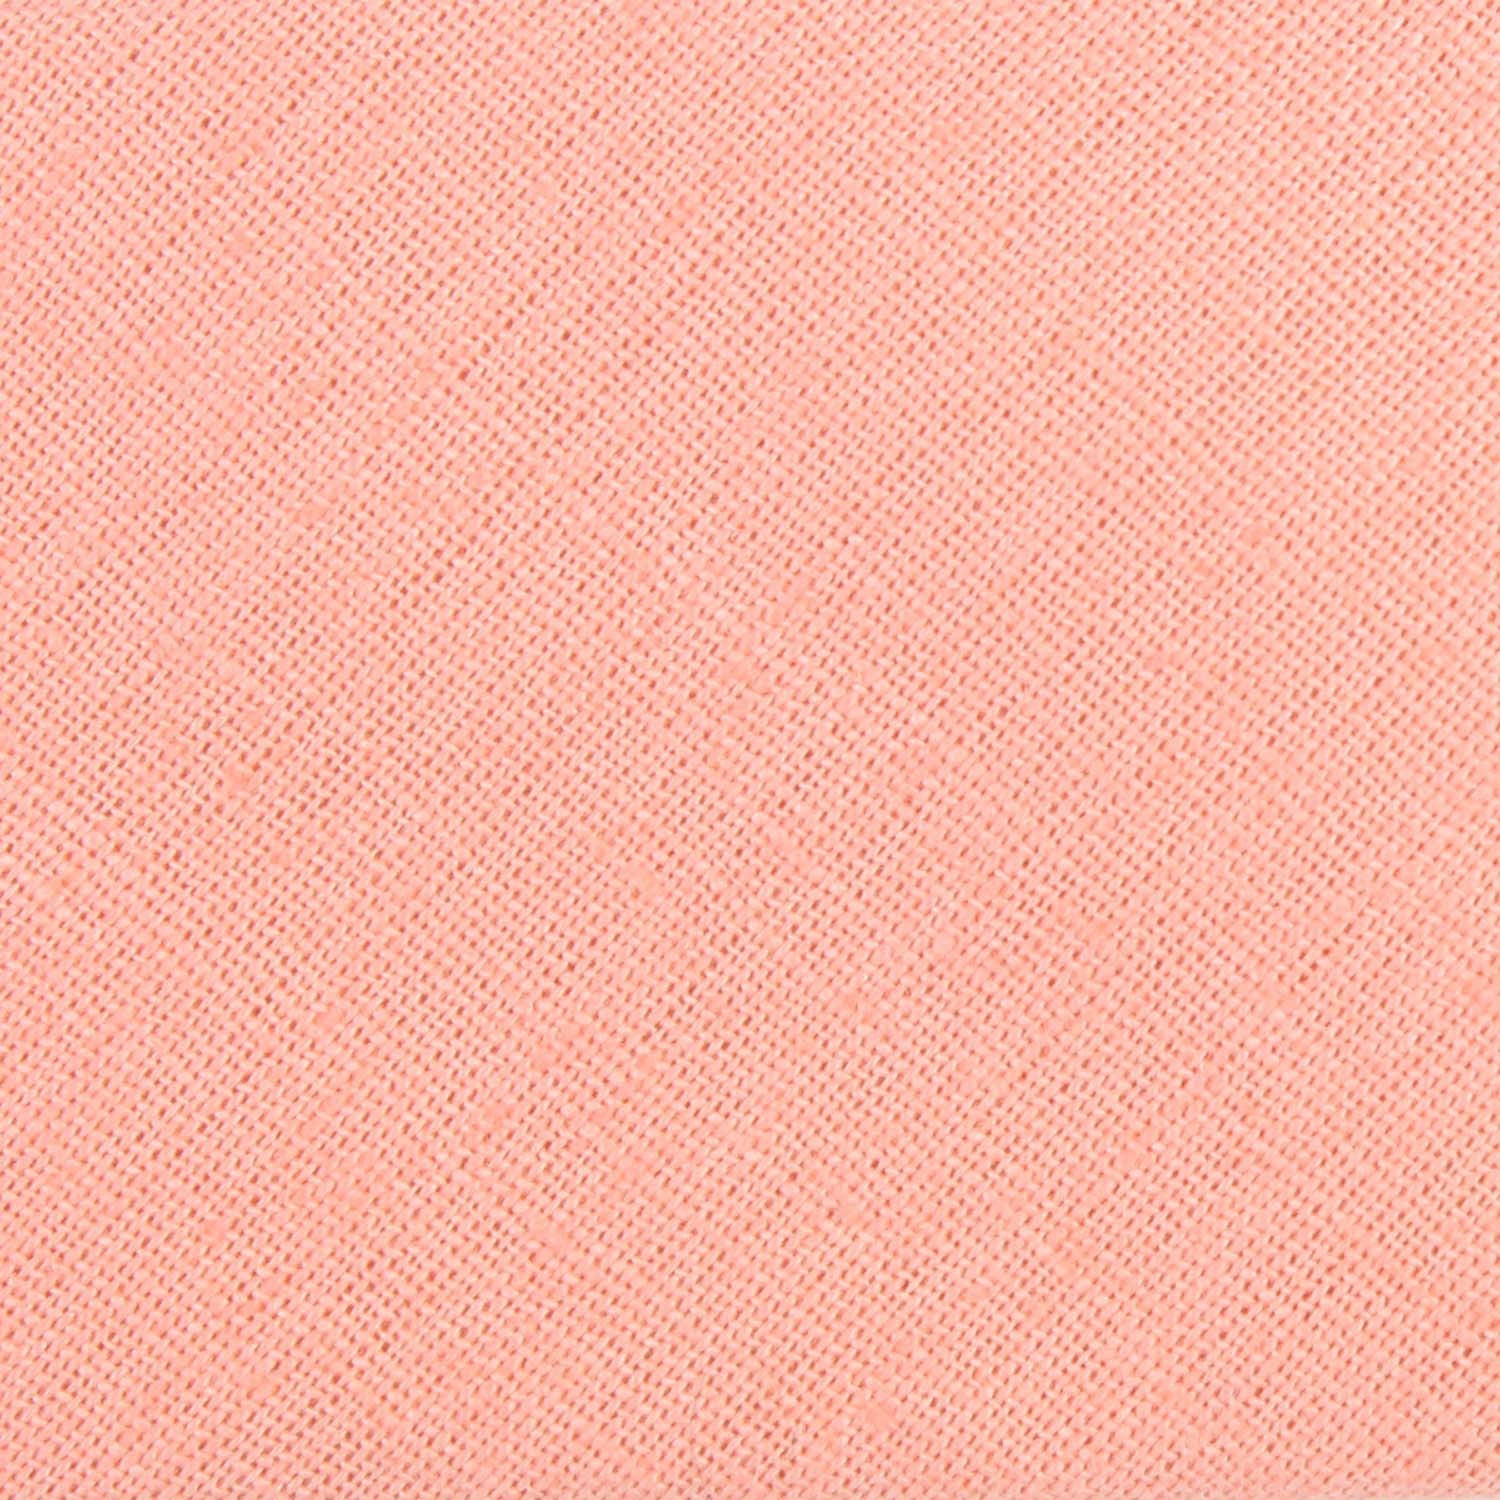 Apricot Peach Slub Linen Fabric Necktie L167